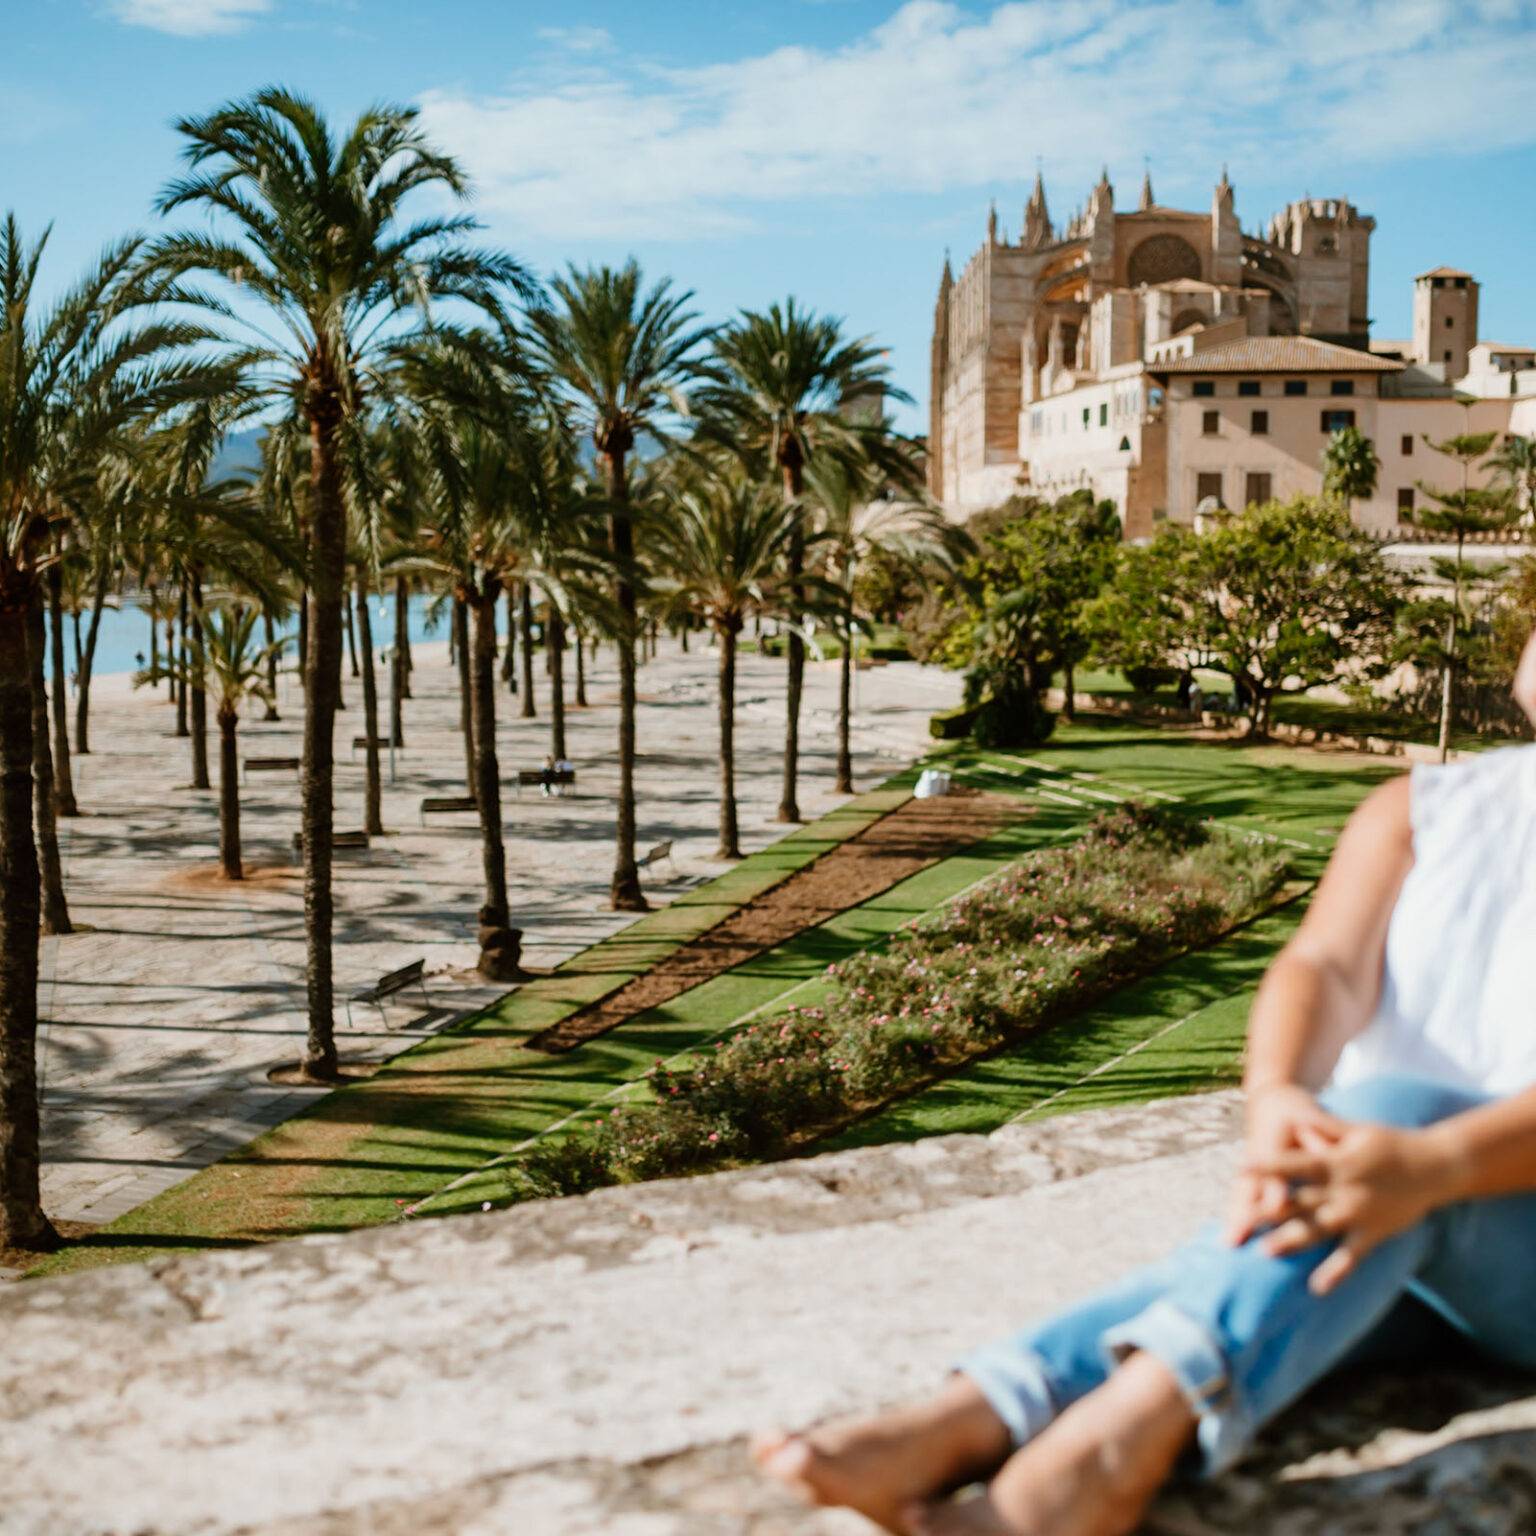 Blick auf die zur beigefarbenen Kathedrale La Seu in Mallorcas umgeben von hochwachsenden Palmen.